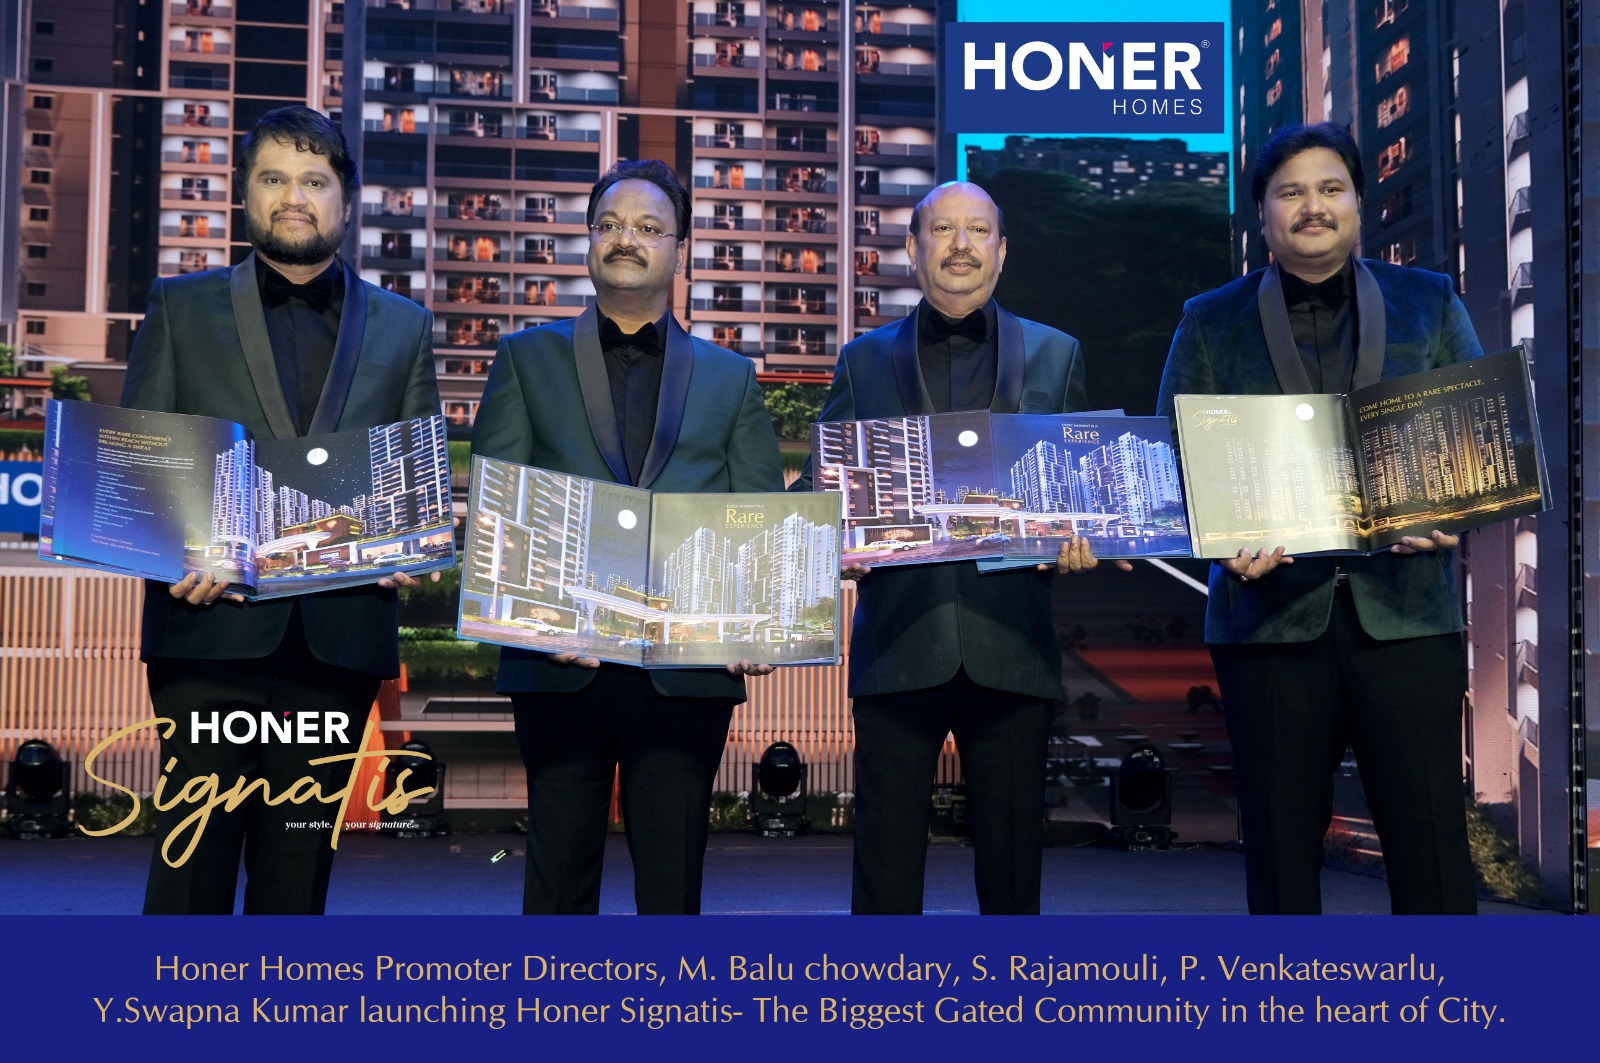 ہانر ہومز(Honer Homes) حیدرآباد کے سب سے بڑے گیٹڈ کمیونٹی پروجیکٹ نے اپنے نئے پروجیکٹ کی نقاب کشائی کی